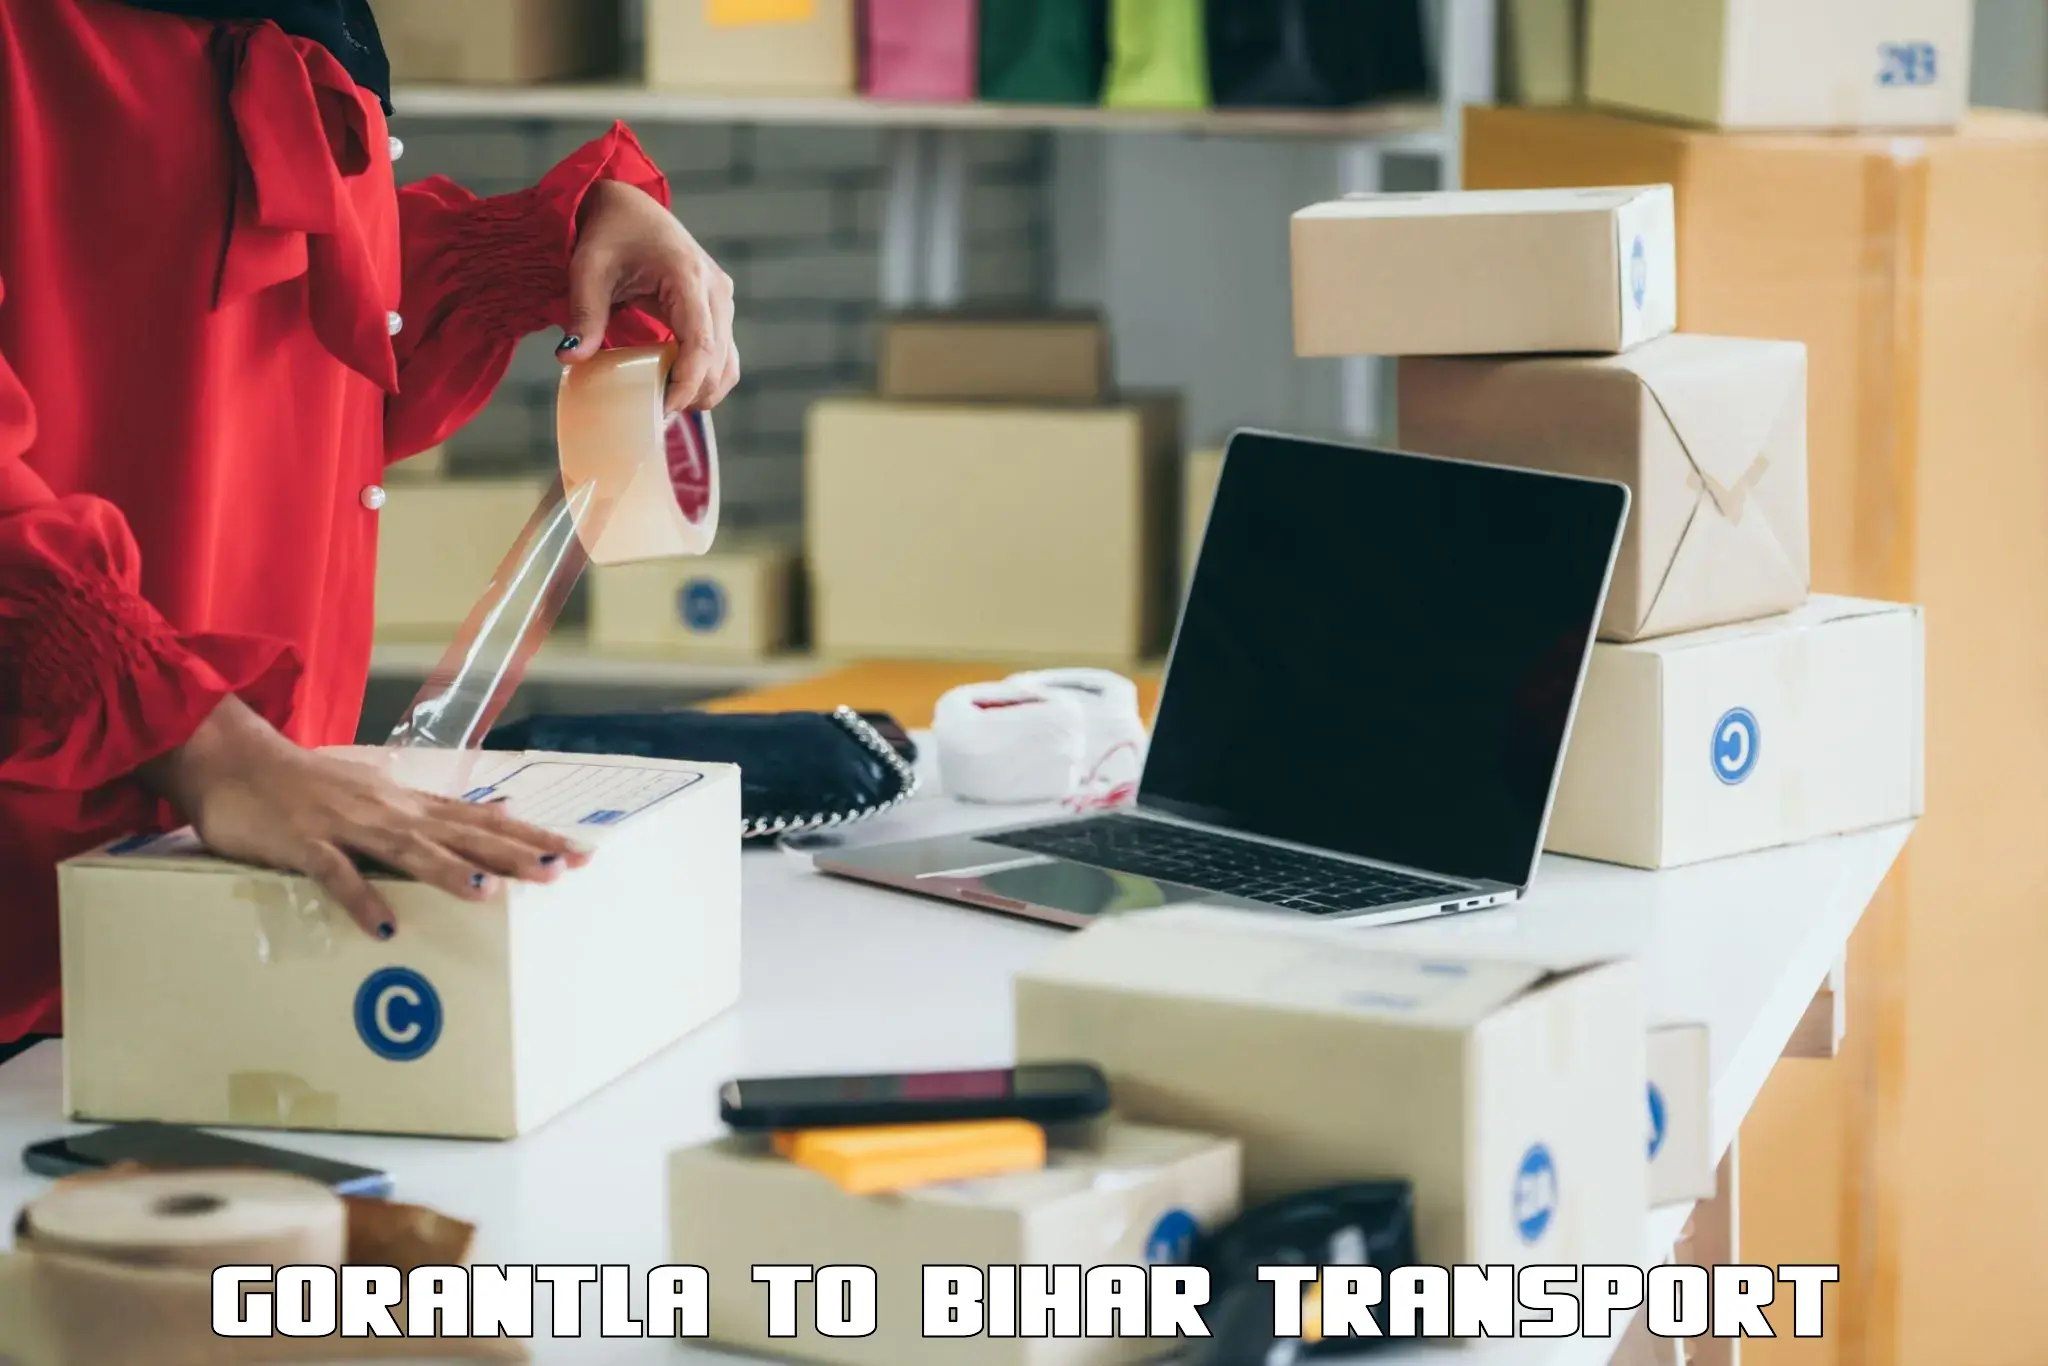 Daily transport service Gorantla to Saraiya